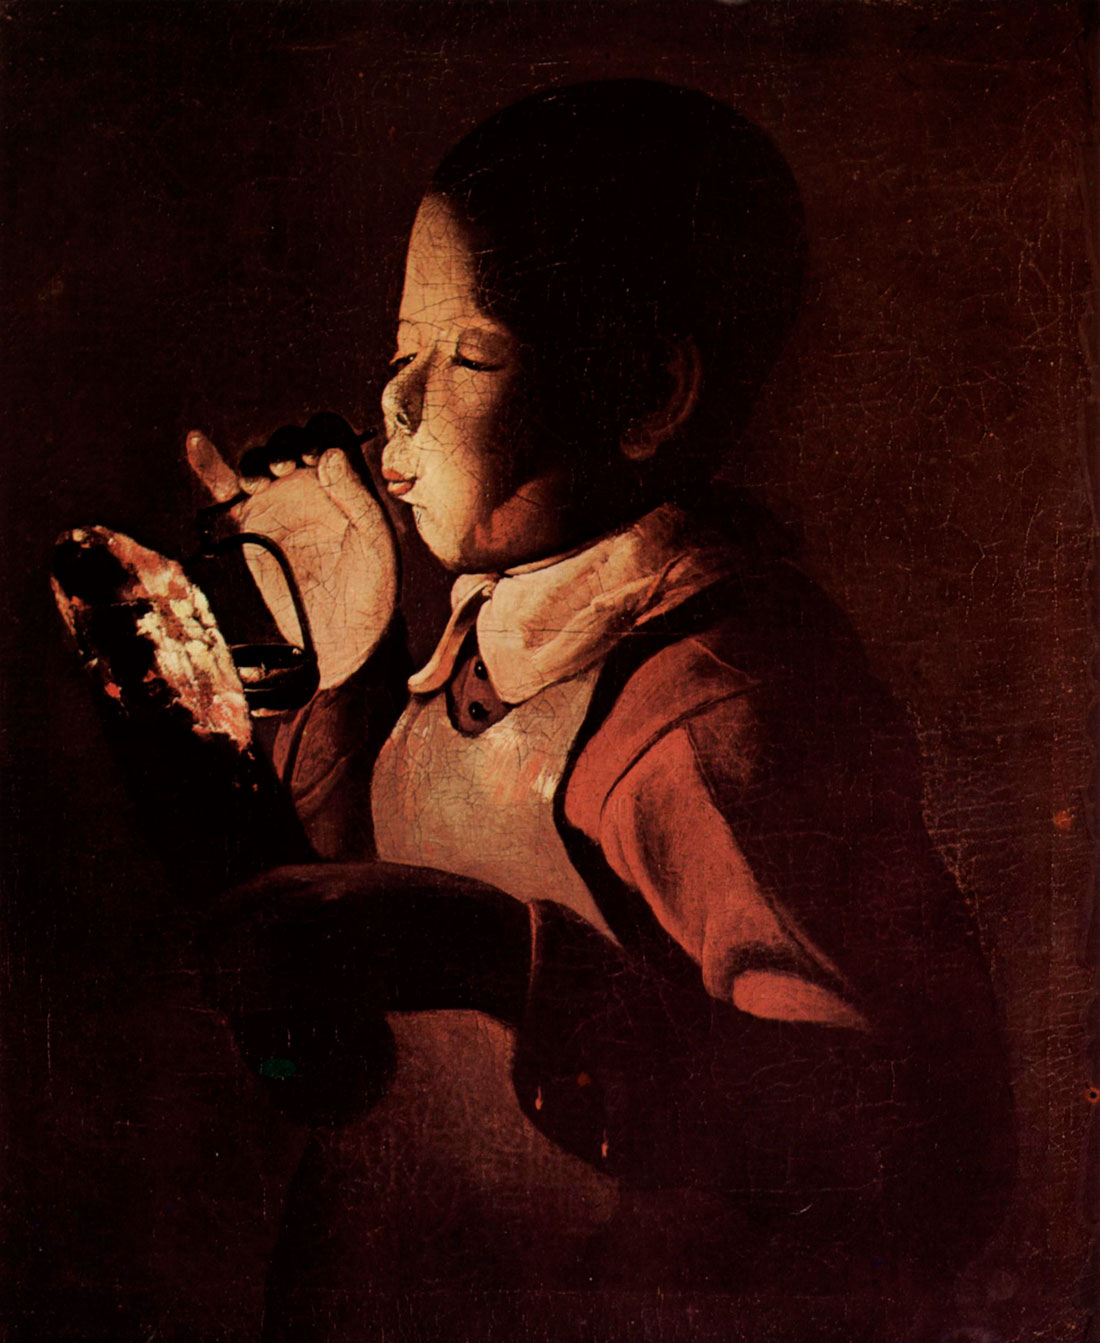 Helnwein Child: Georges de la Tour, Boy-Blowing-at-Lamp, Oil on canvas, ca.1649, 61 x 51 cm, Musée des Beaux-Arts